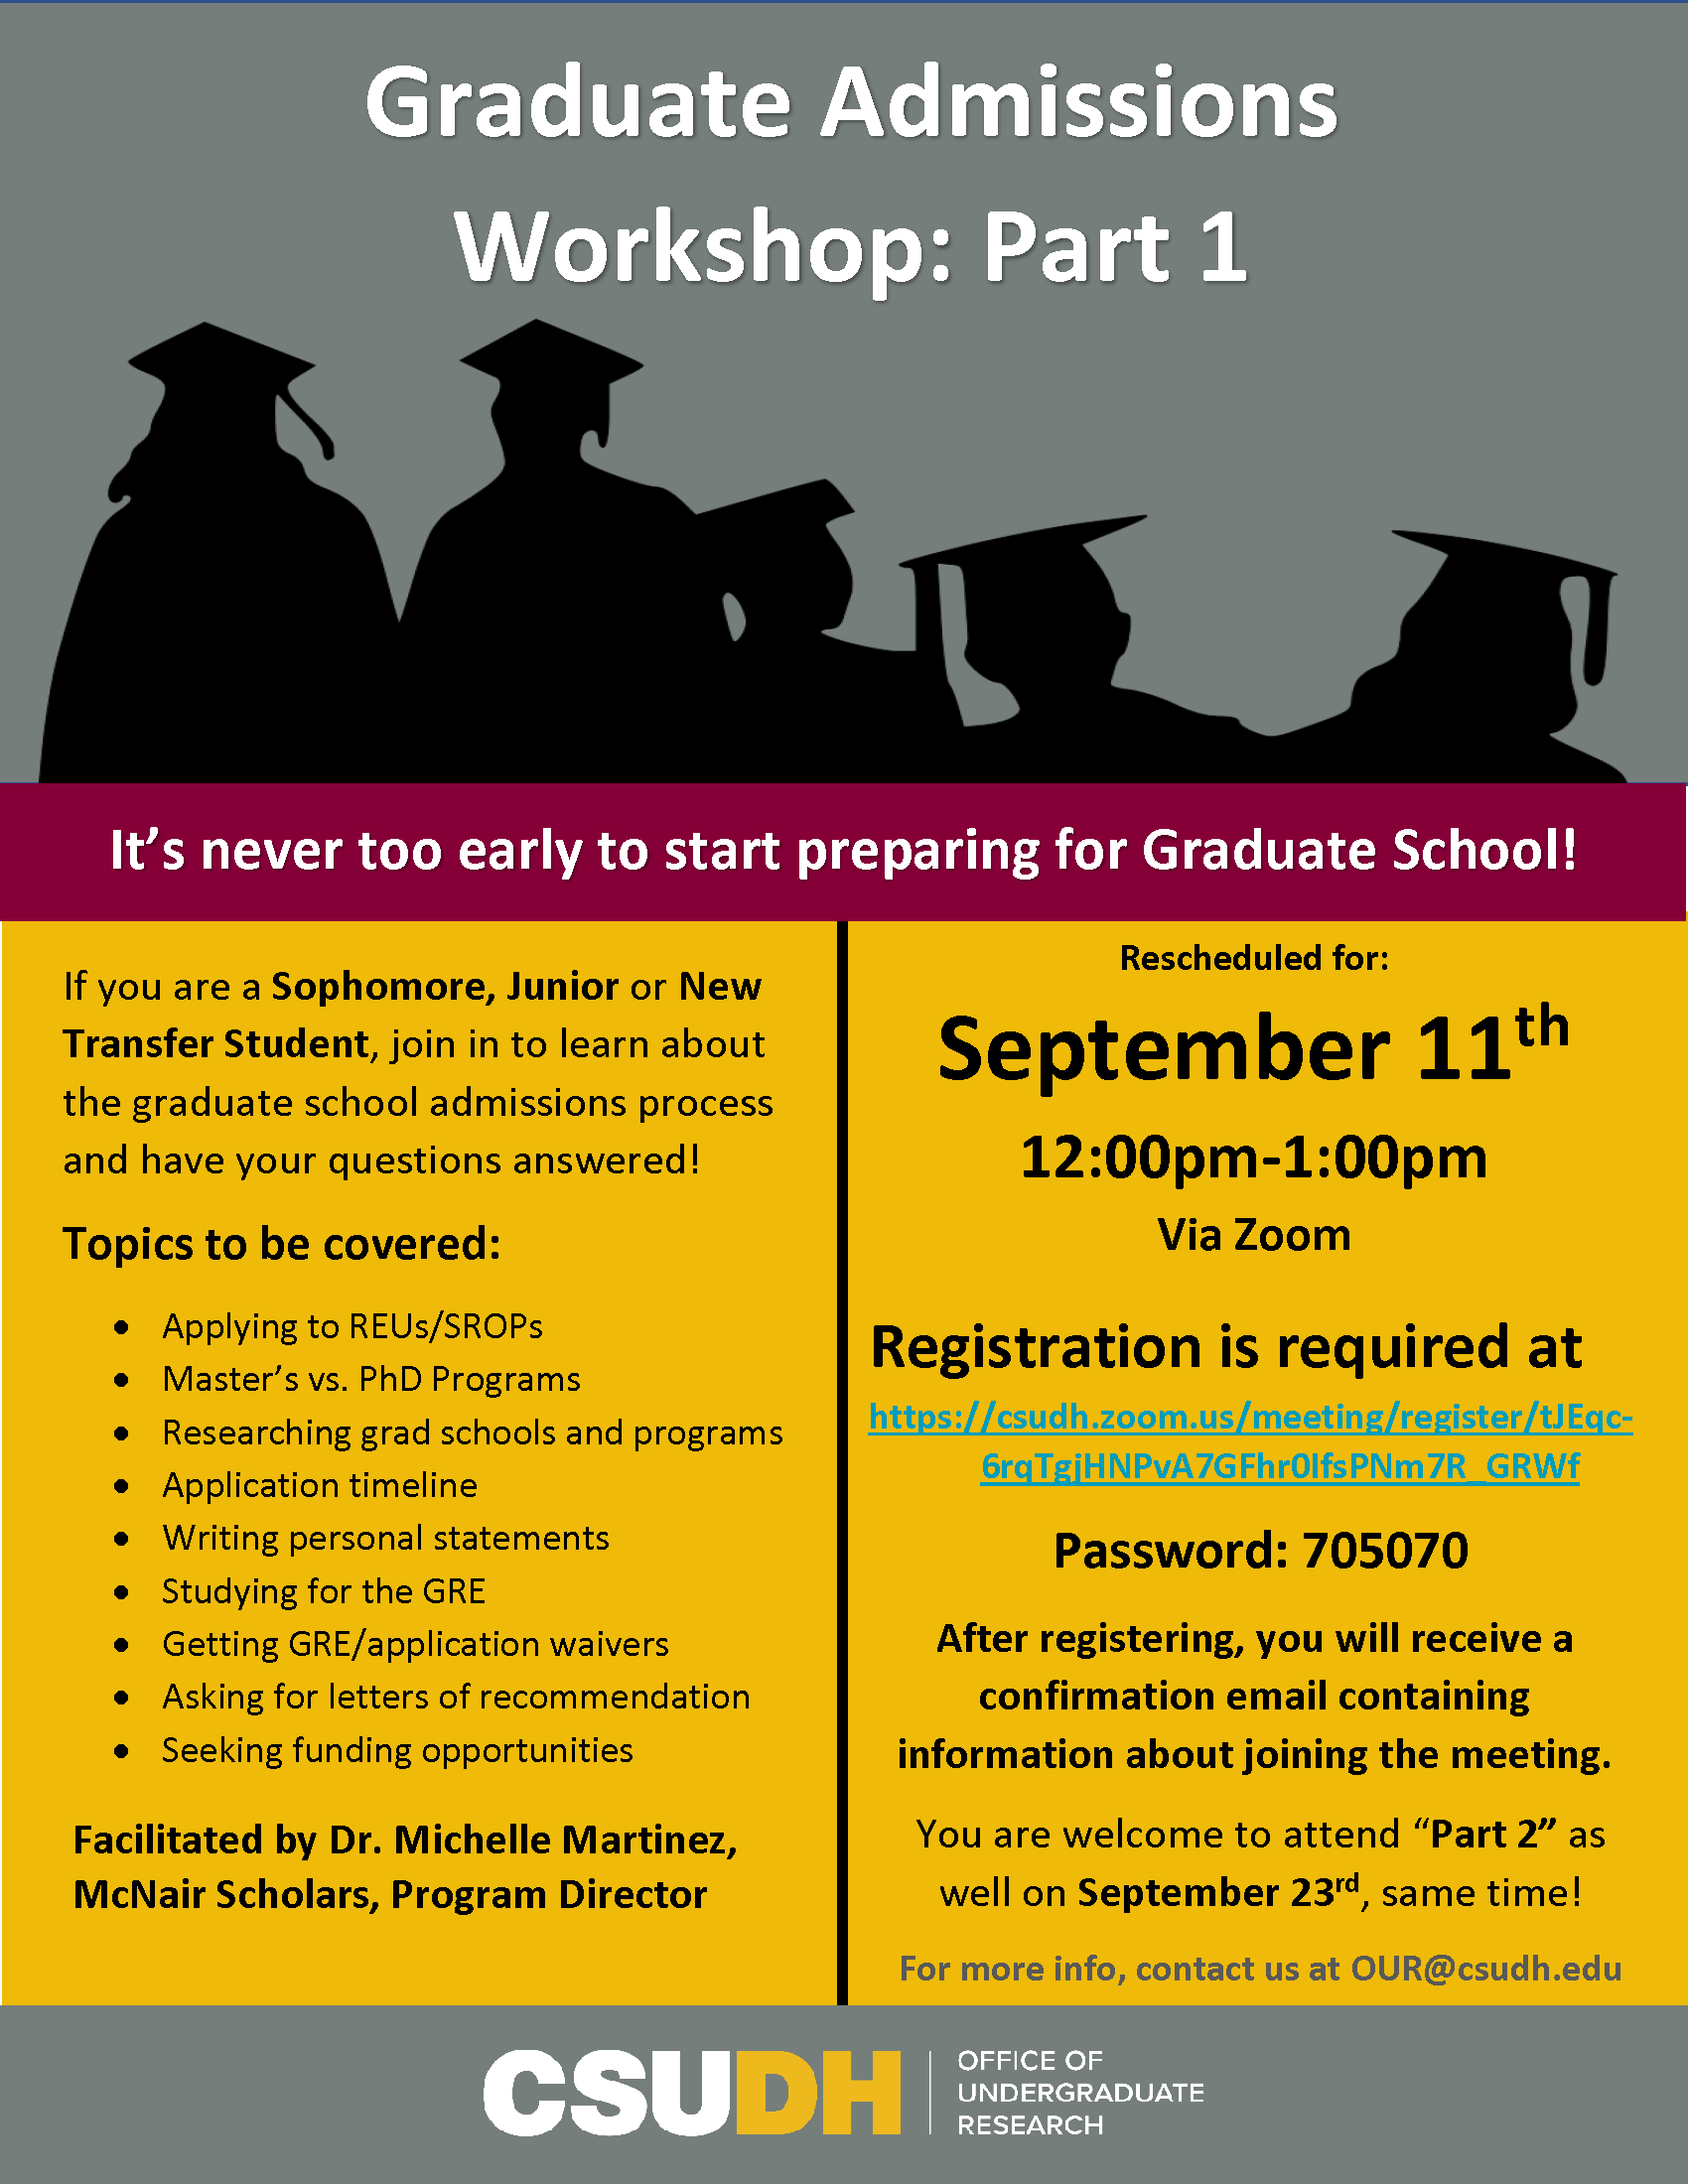 Graduate Admissions Workshop- Part 1 Flyer